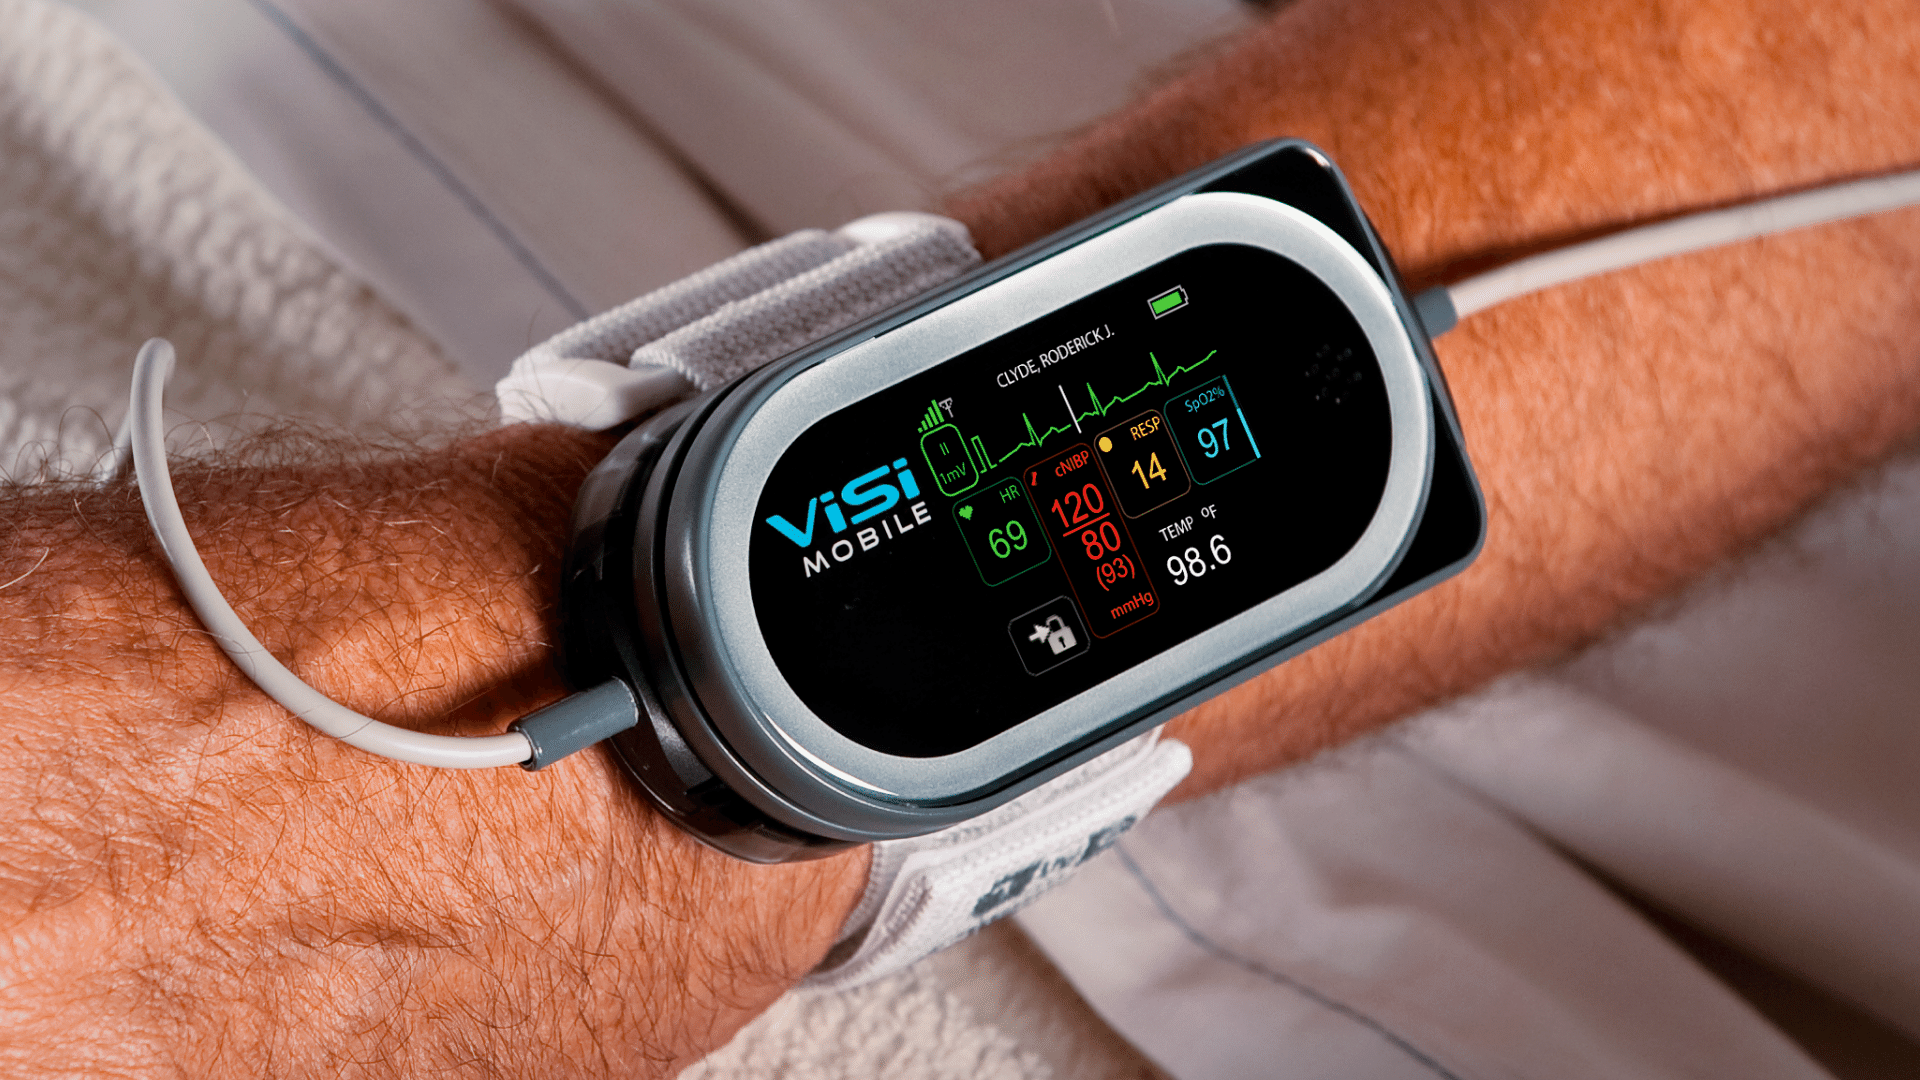 Continuous Non-Invasive Blood Pressure Device Reduces Nurse Burnout